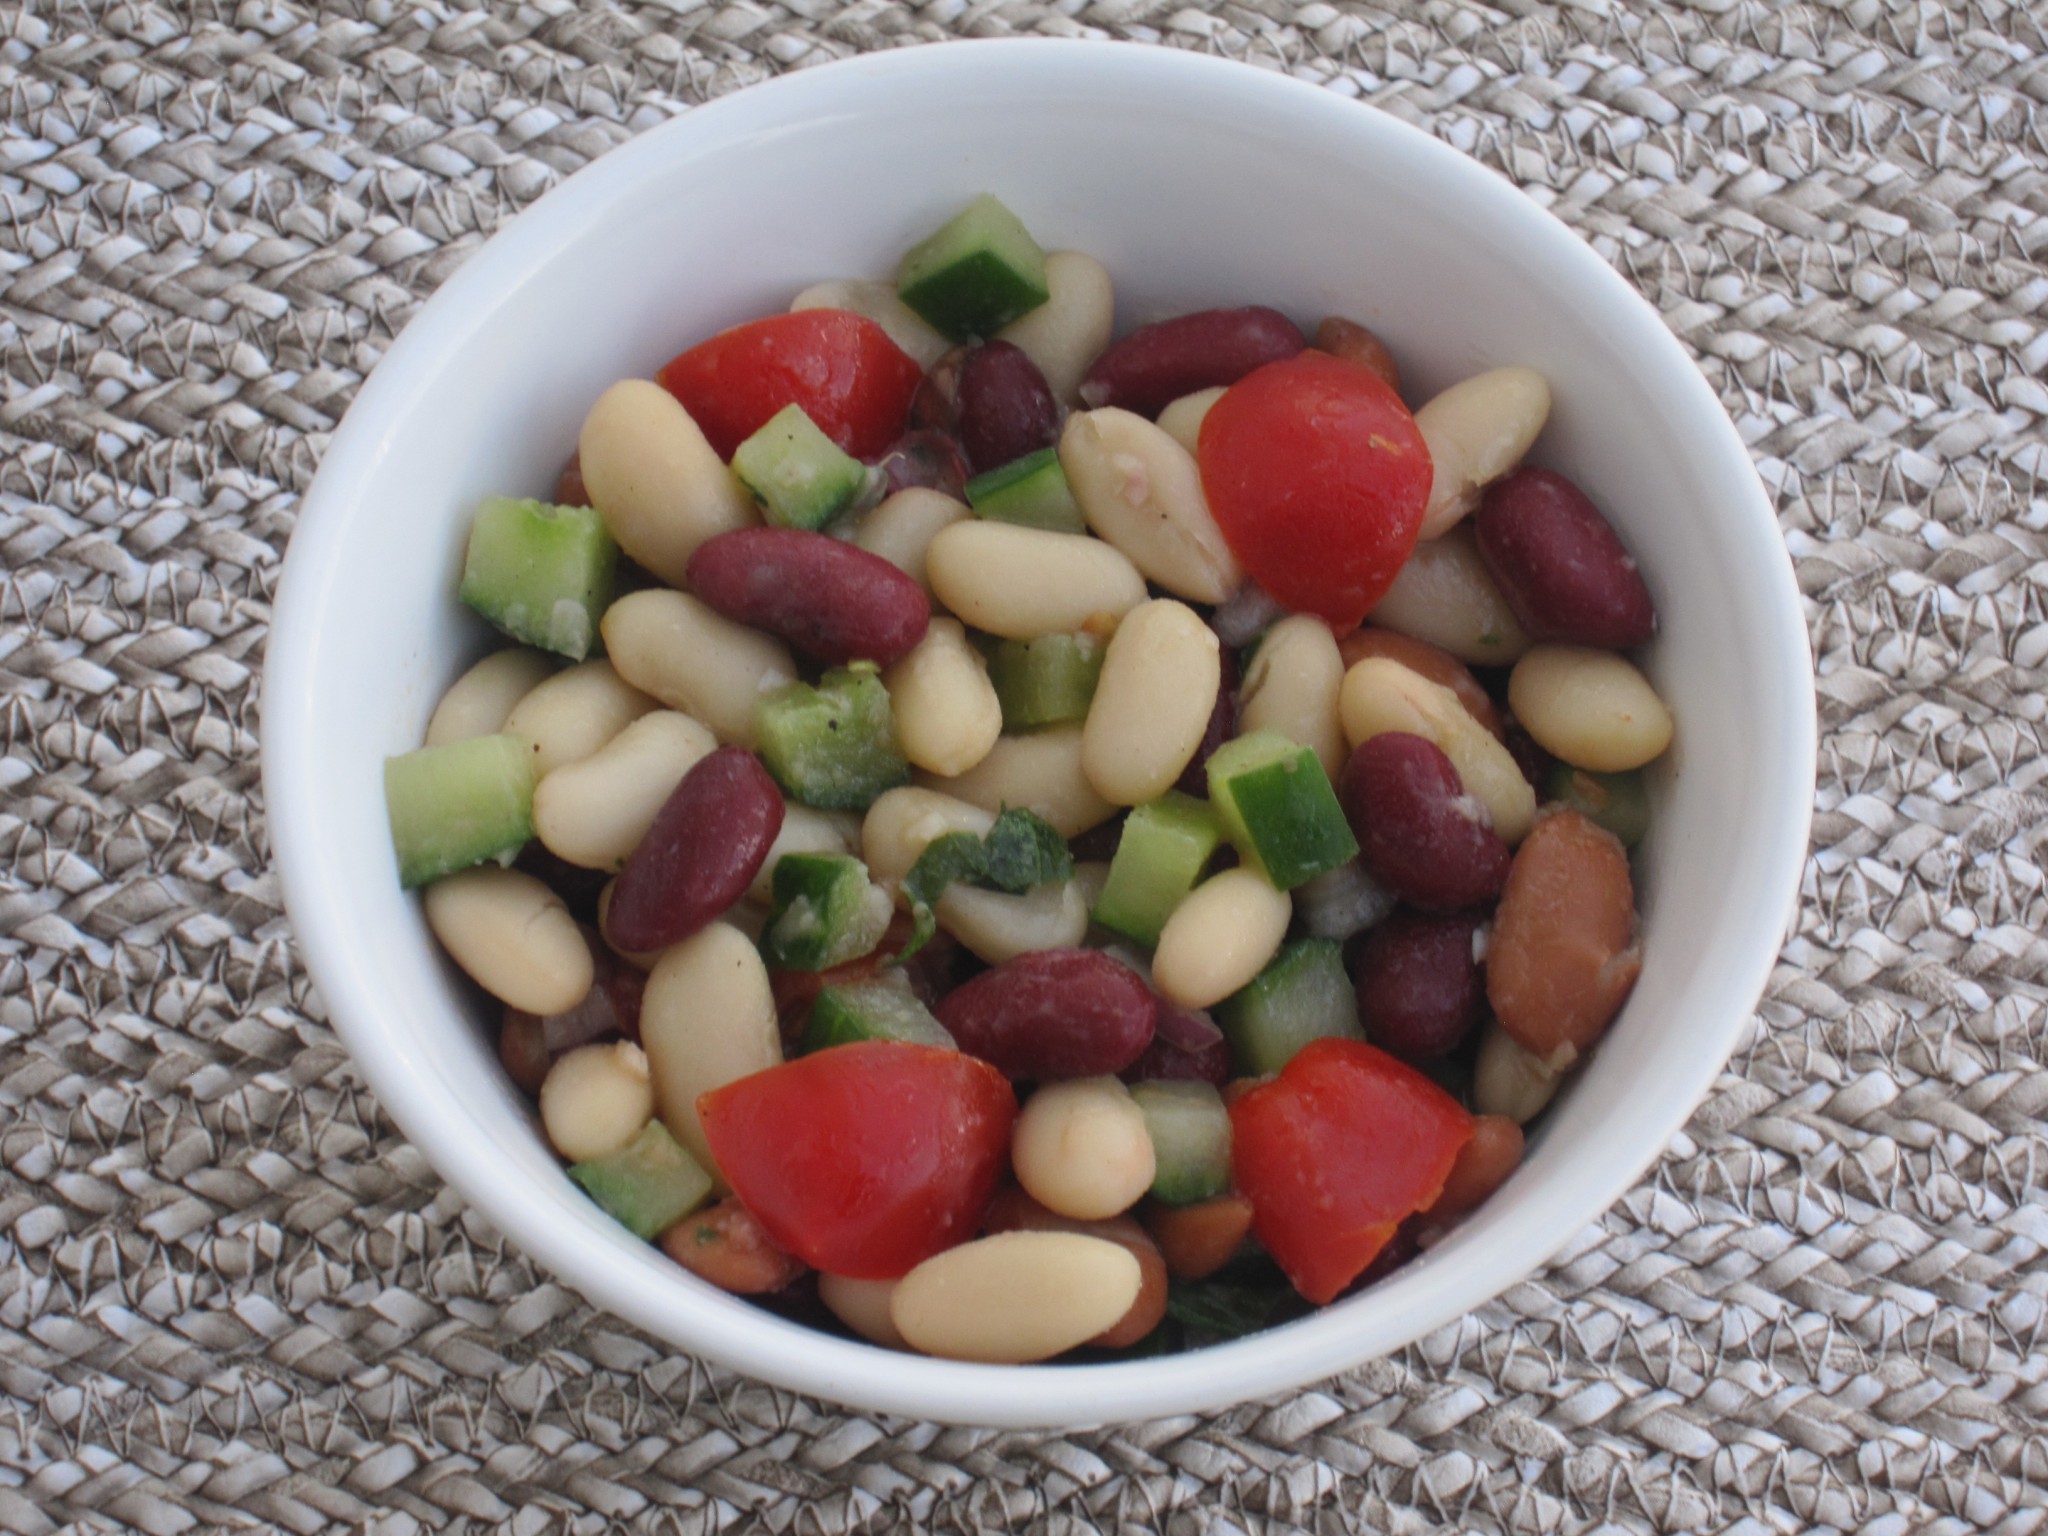 Bean salad. So rich in fiber! So nutritious.